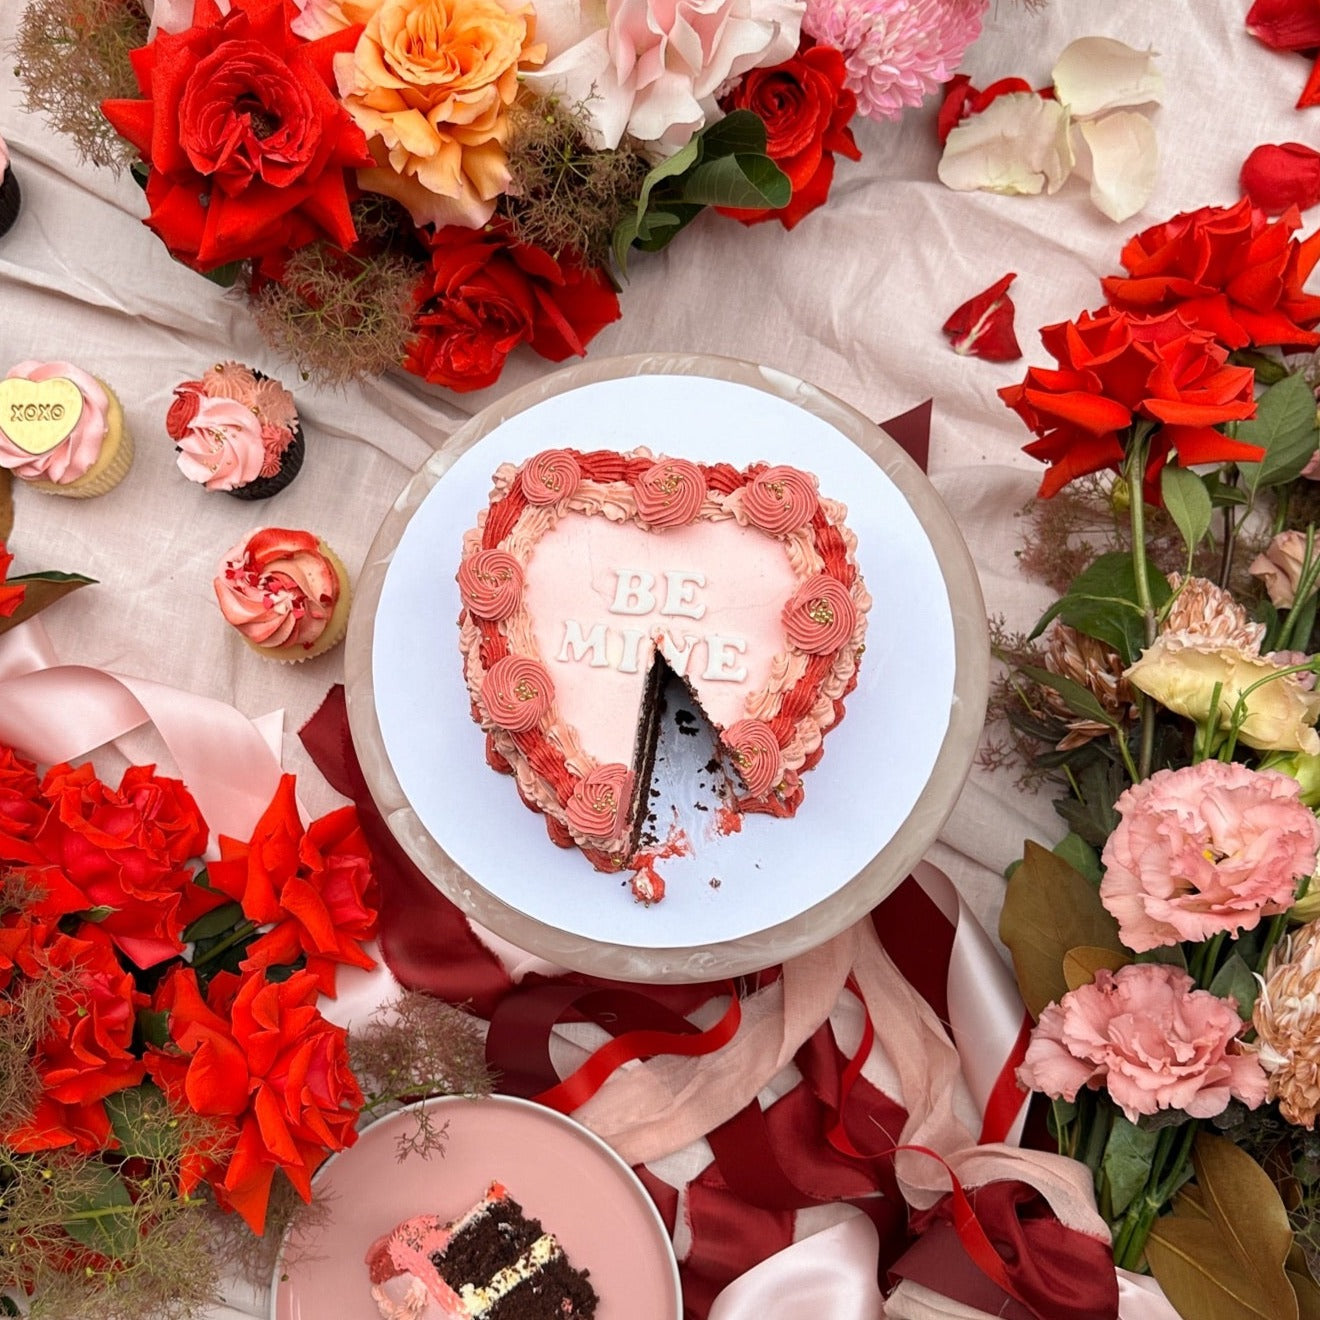 Be Mine Heart-Shaped Cake